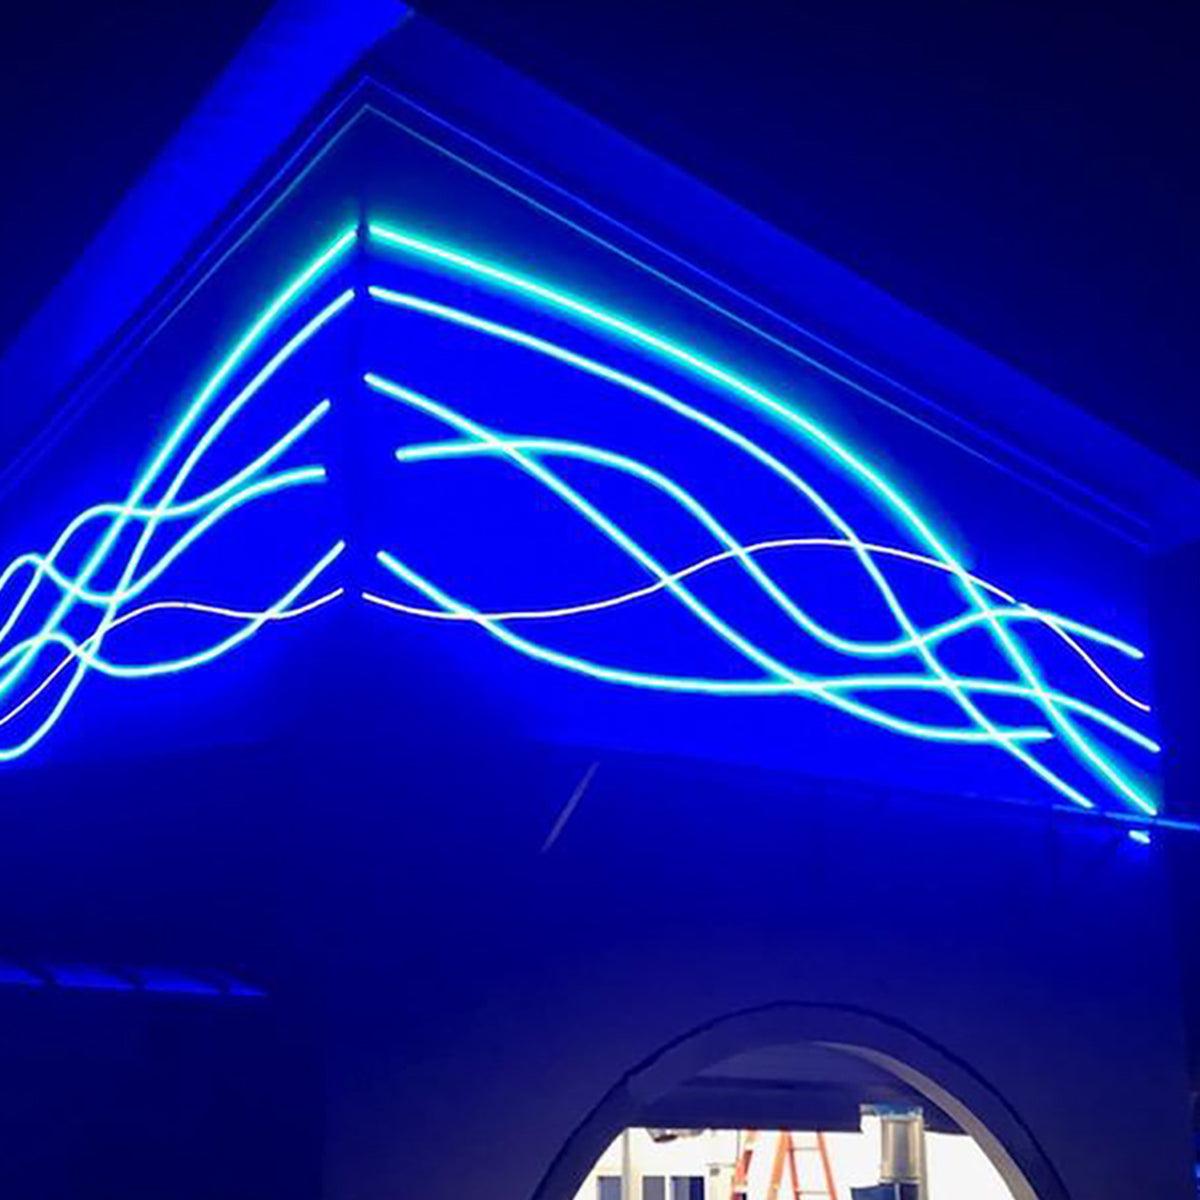 Neon BLAZE LED Neon Strip Light, Blue, 24V, Side Bending - Bees Lighting